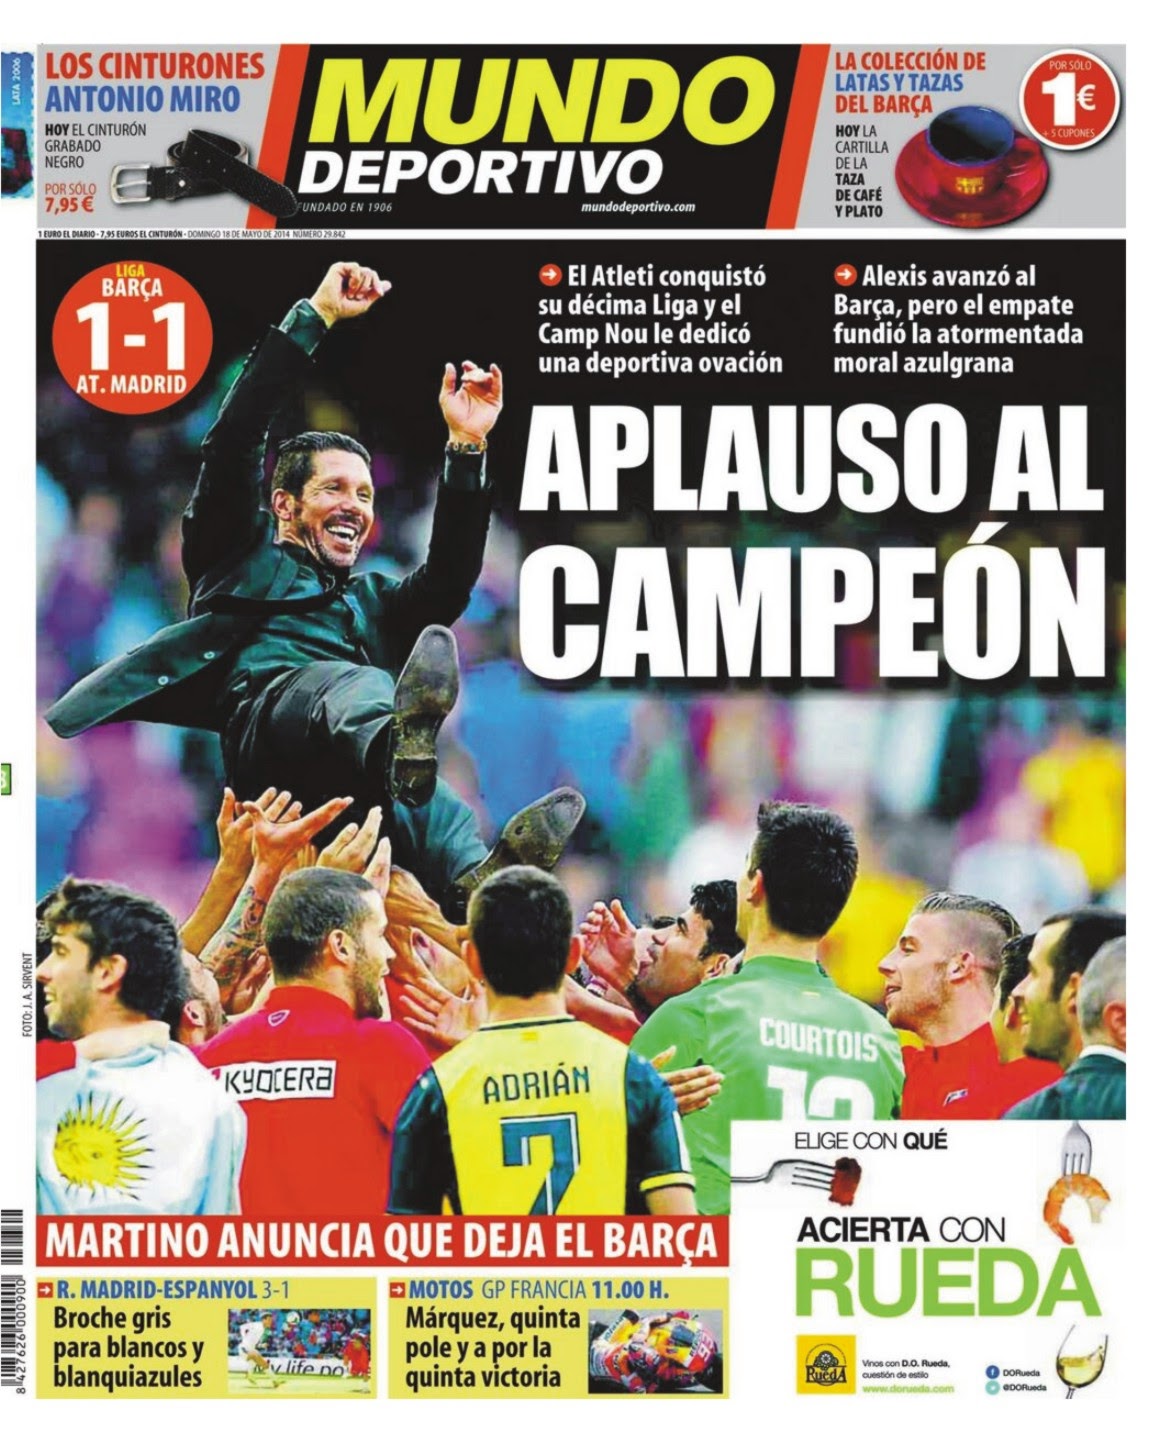 LA PELOTA NO DOBLA: Atlético de Madrid campeón de Liga en la tapa de los diarios.